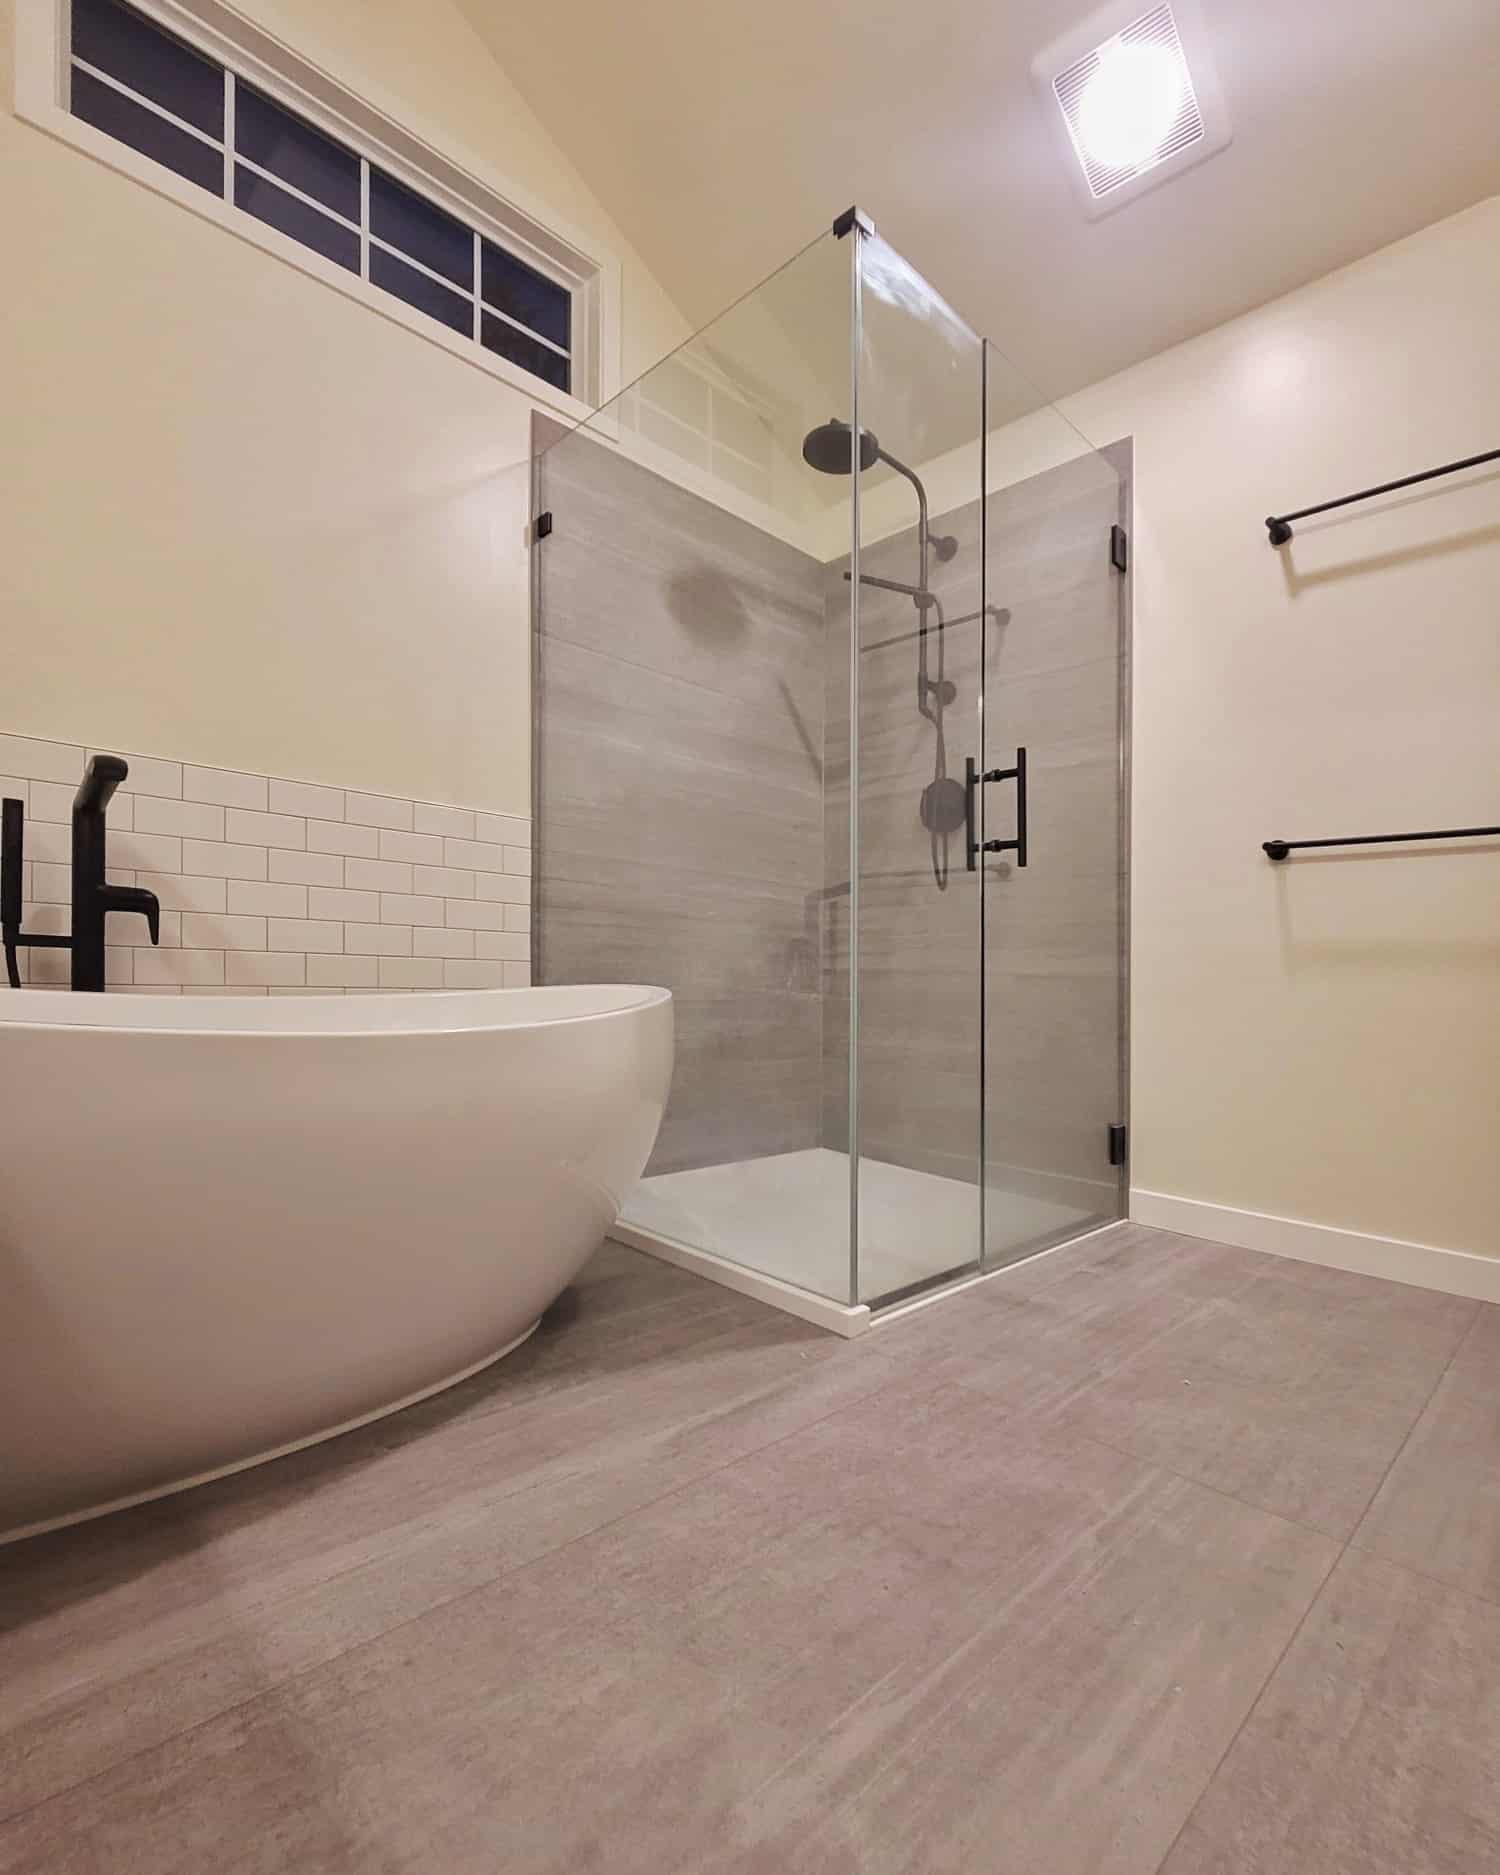 Shower in Main Luxury Bathroom Remodel